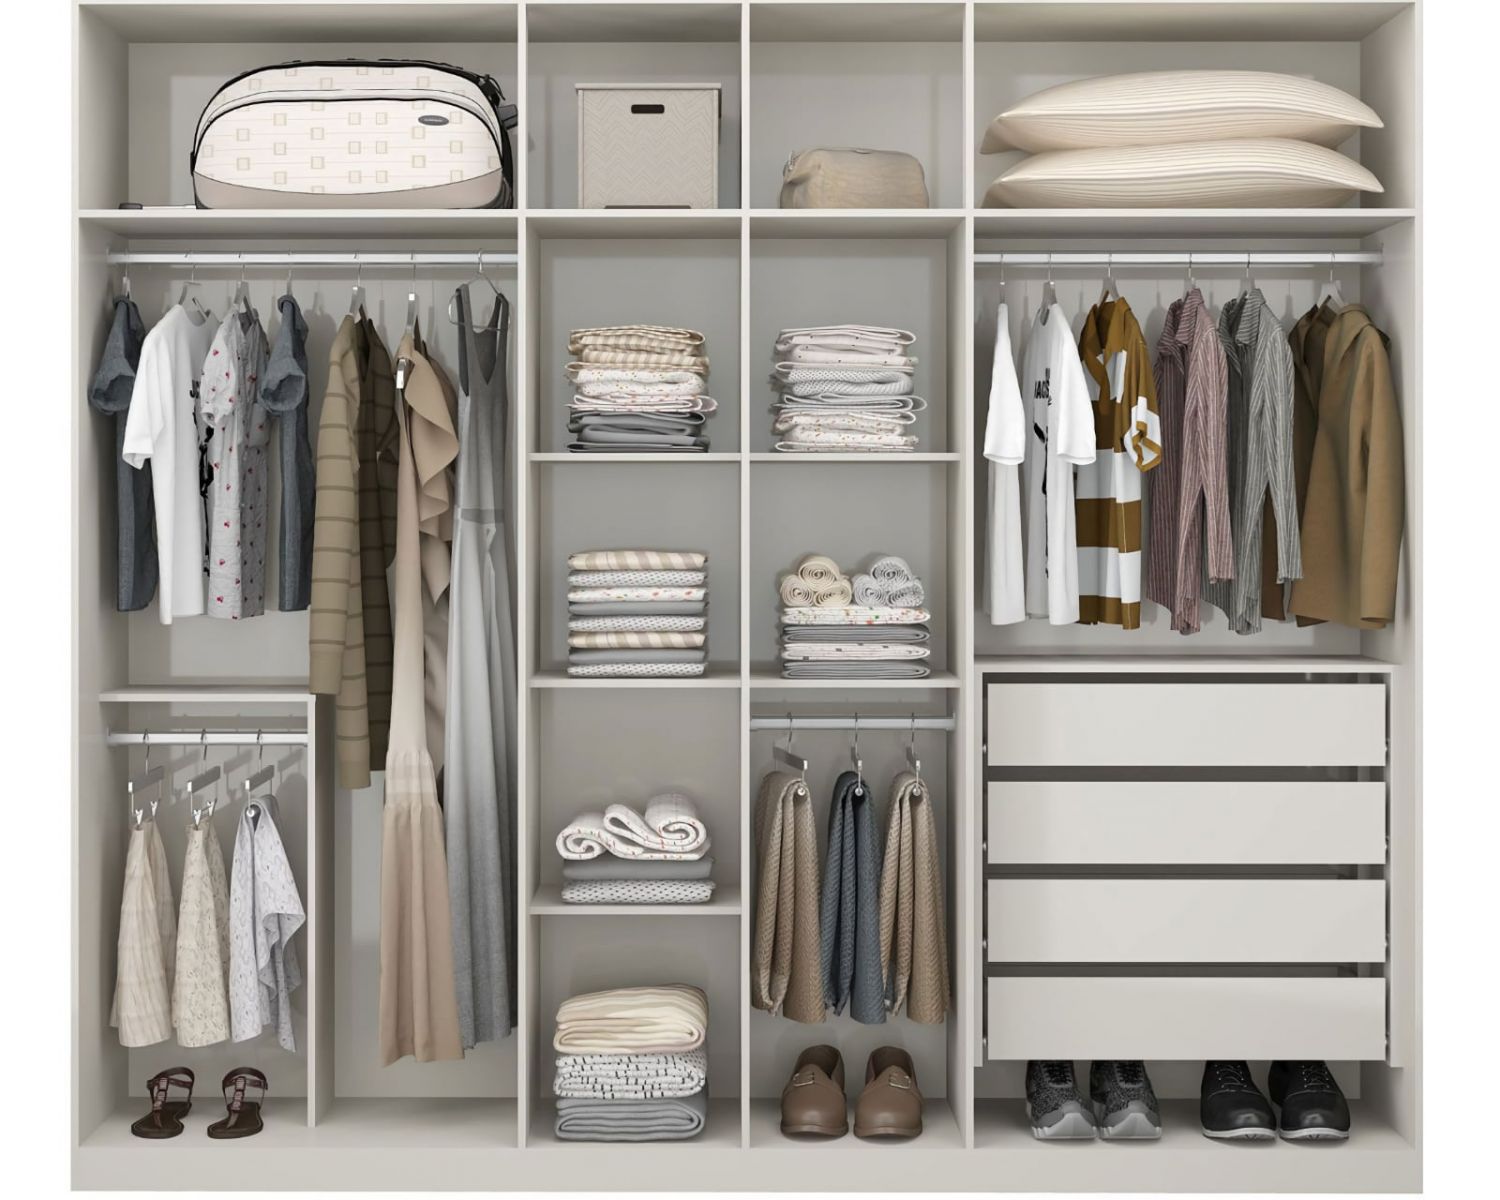 Аккуратно организованный шкаф для одежды с разделами для вешалок, полками для свёрнутой одежды, выдвижными ящиками и нижними отсеками для обуви